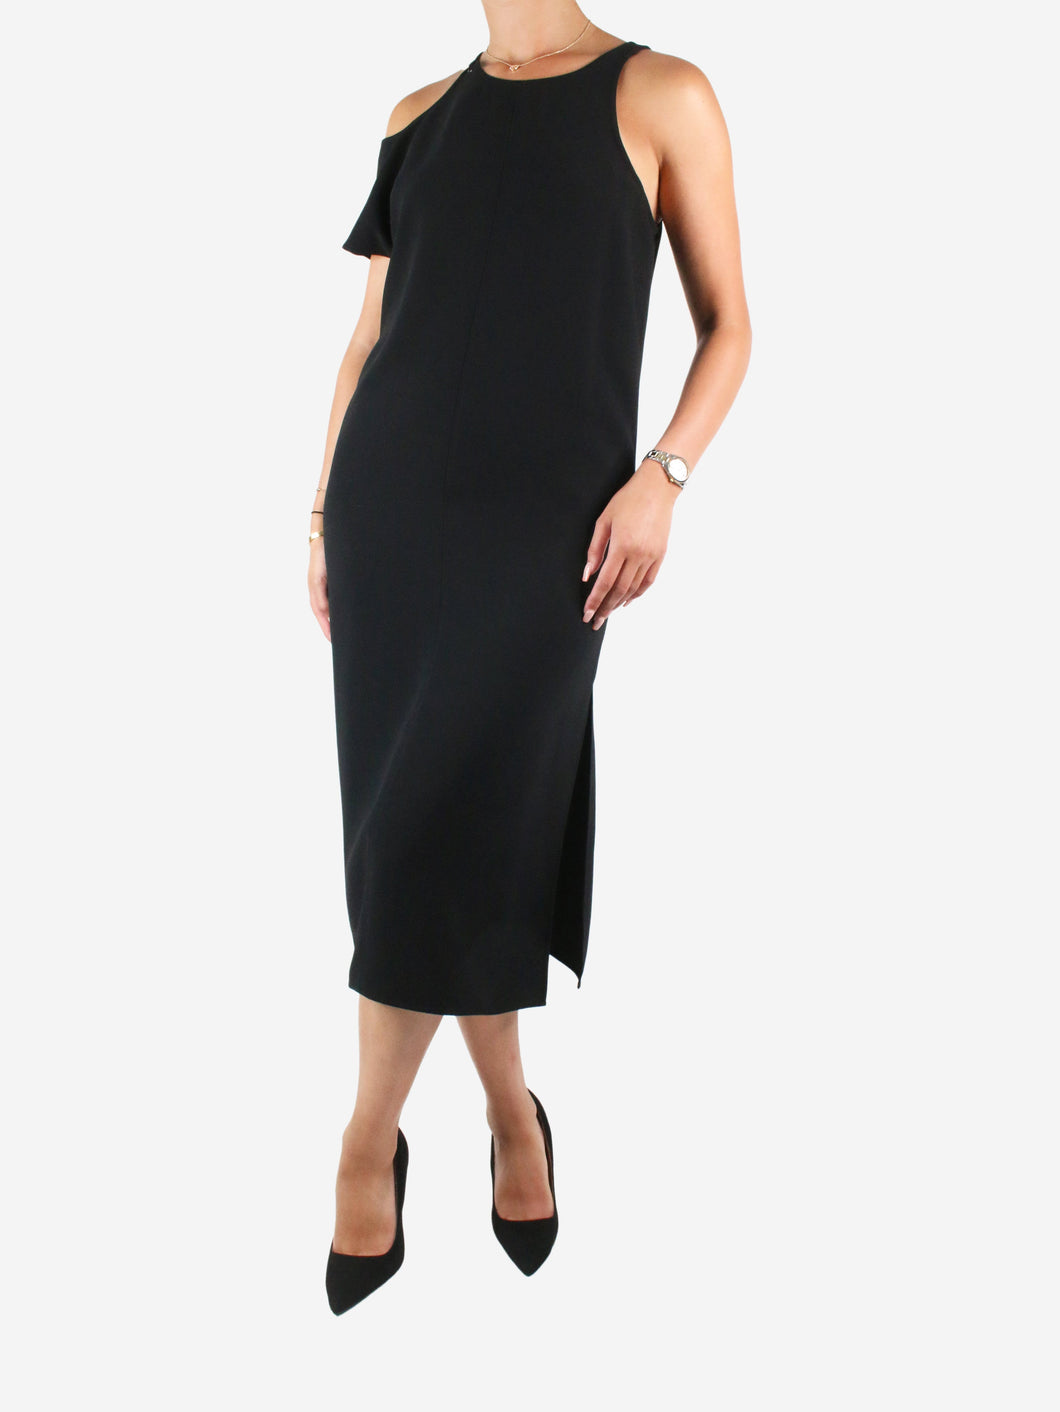 Black one-shoulder dress - size US 4 Dresses T Alexander Wang 